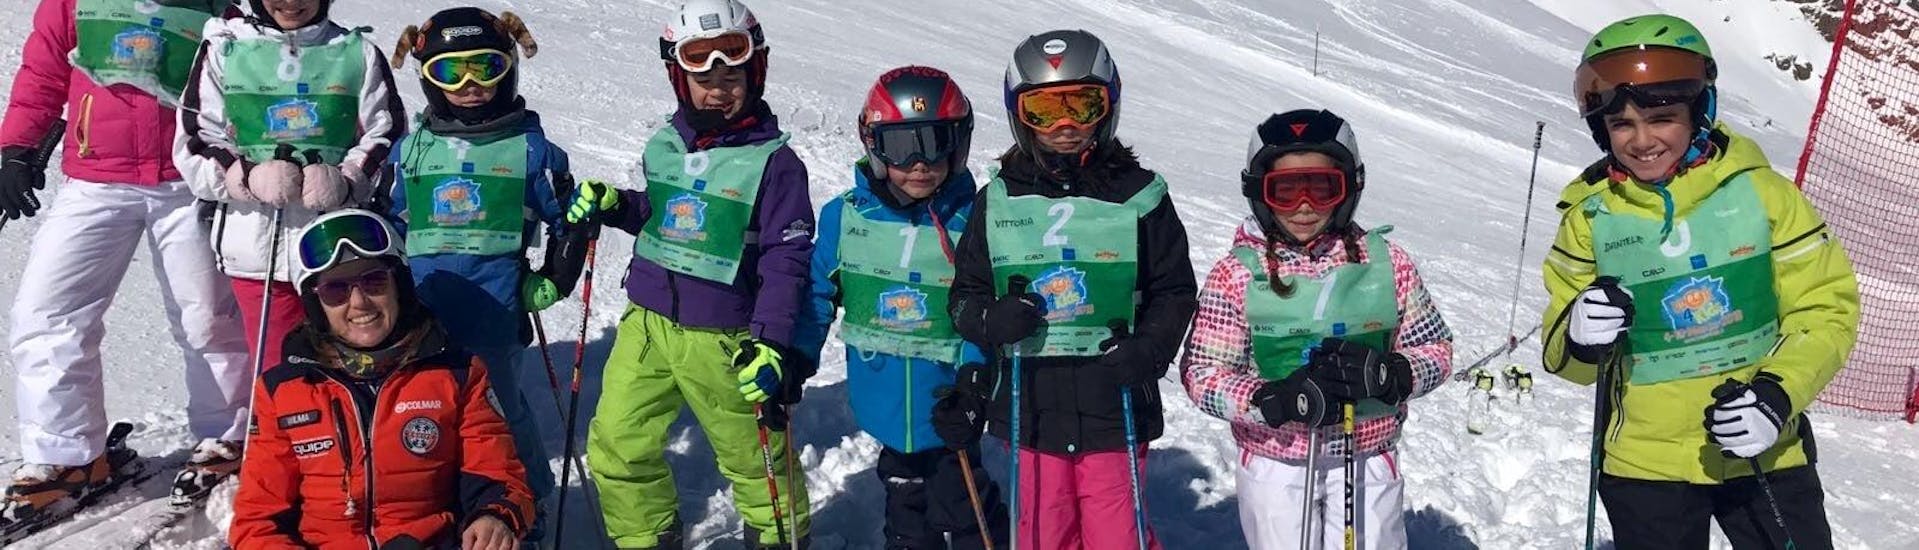 Skikurs für Kinder (4-12 Jahre) - Ganztags.